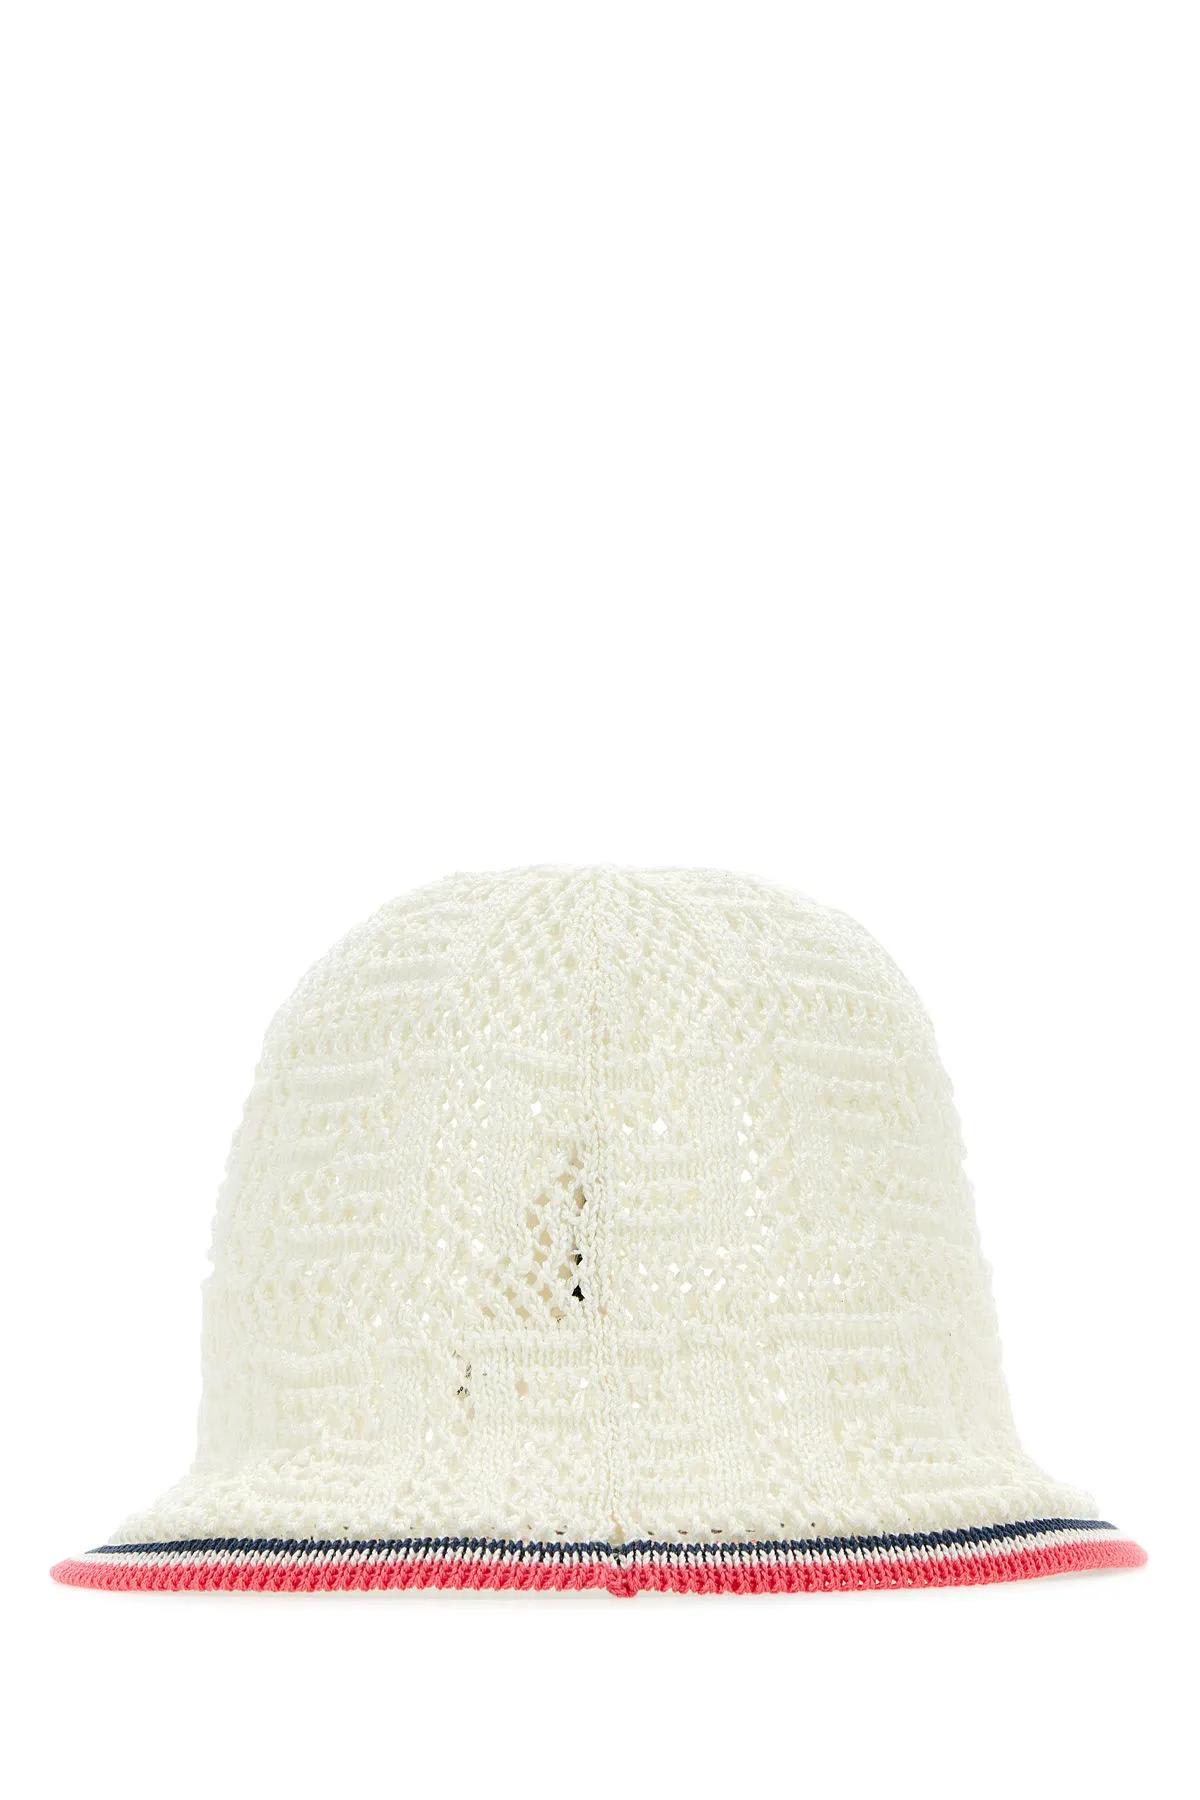 Shop Fendi White Crochet Bucket Hat